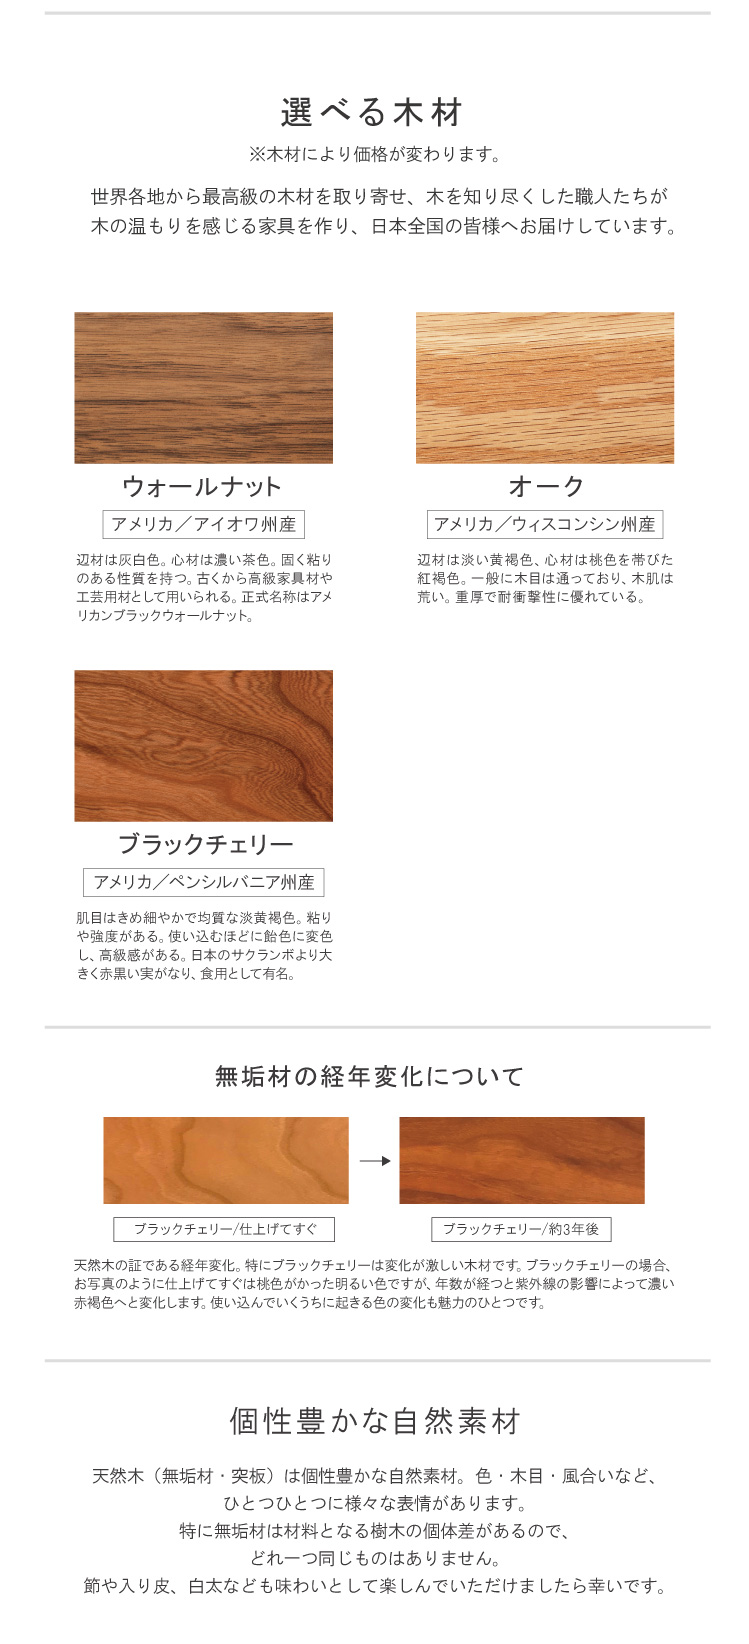 ベンチ ベンチチェア リビング ダイニング 無垢 日本製 1年保証 木製